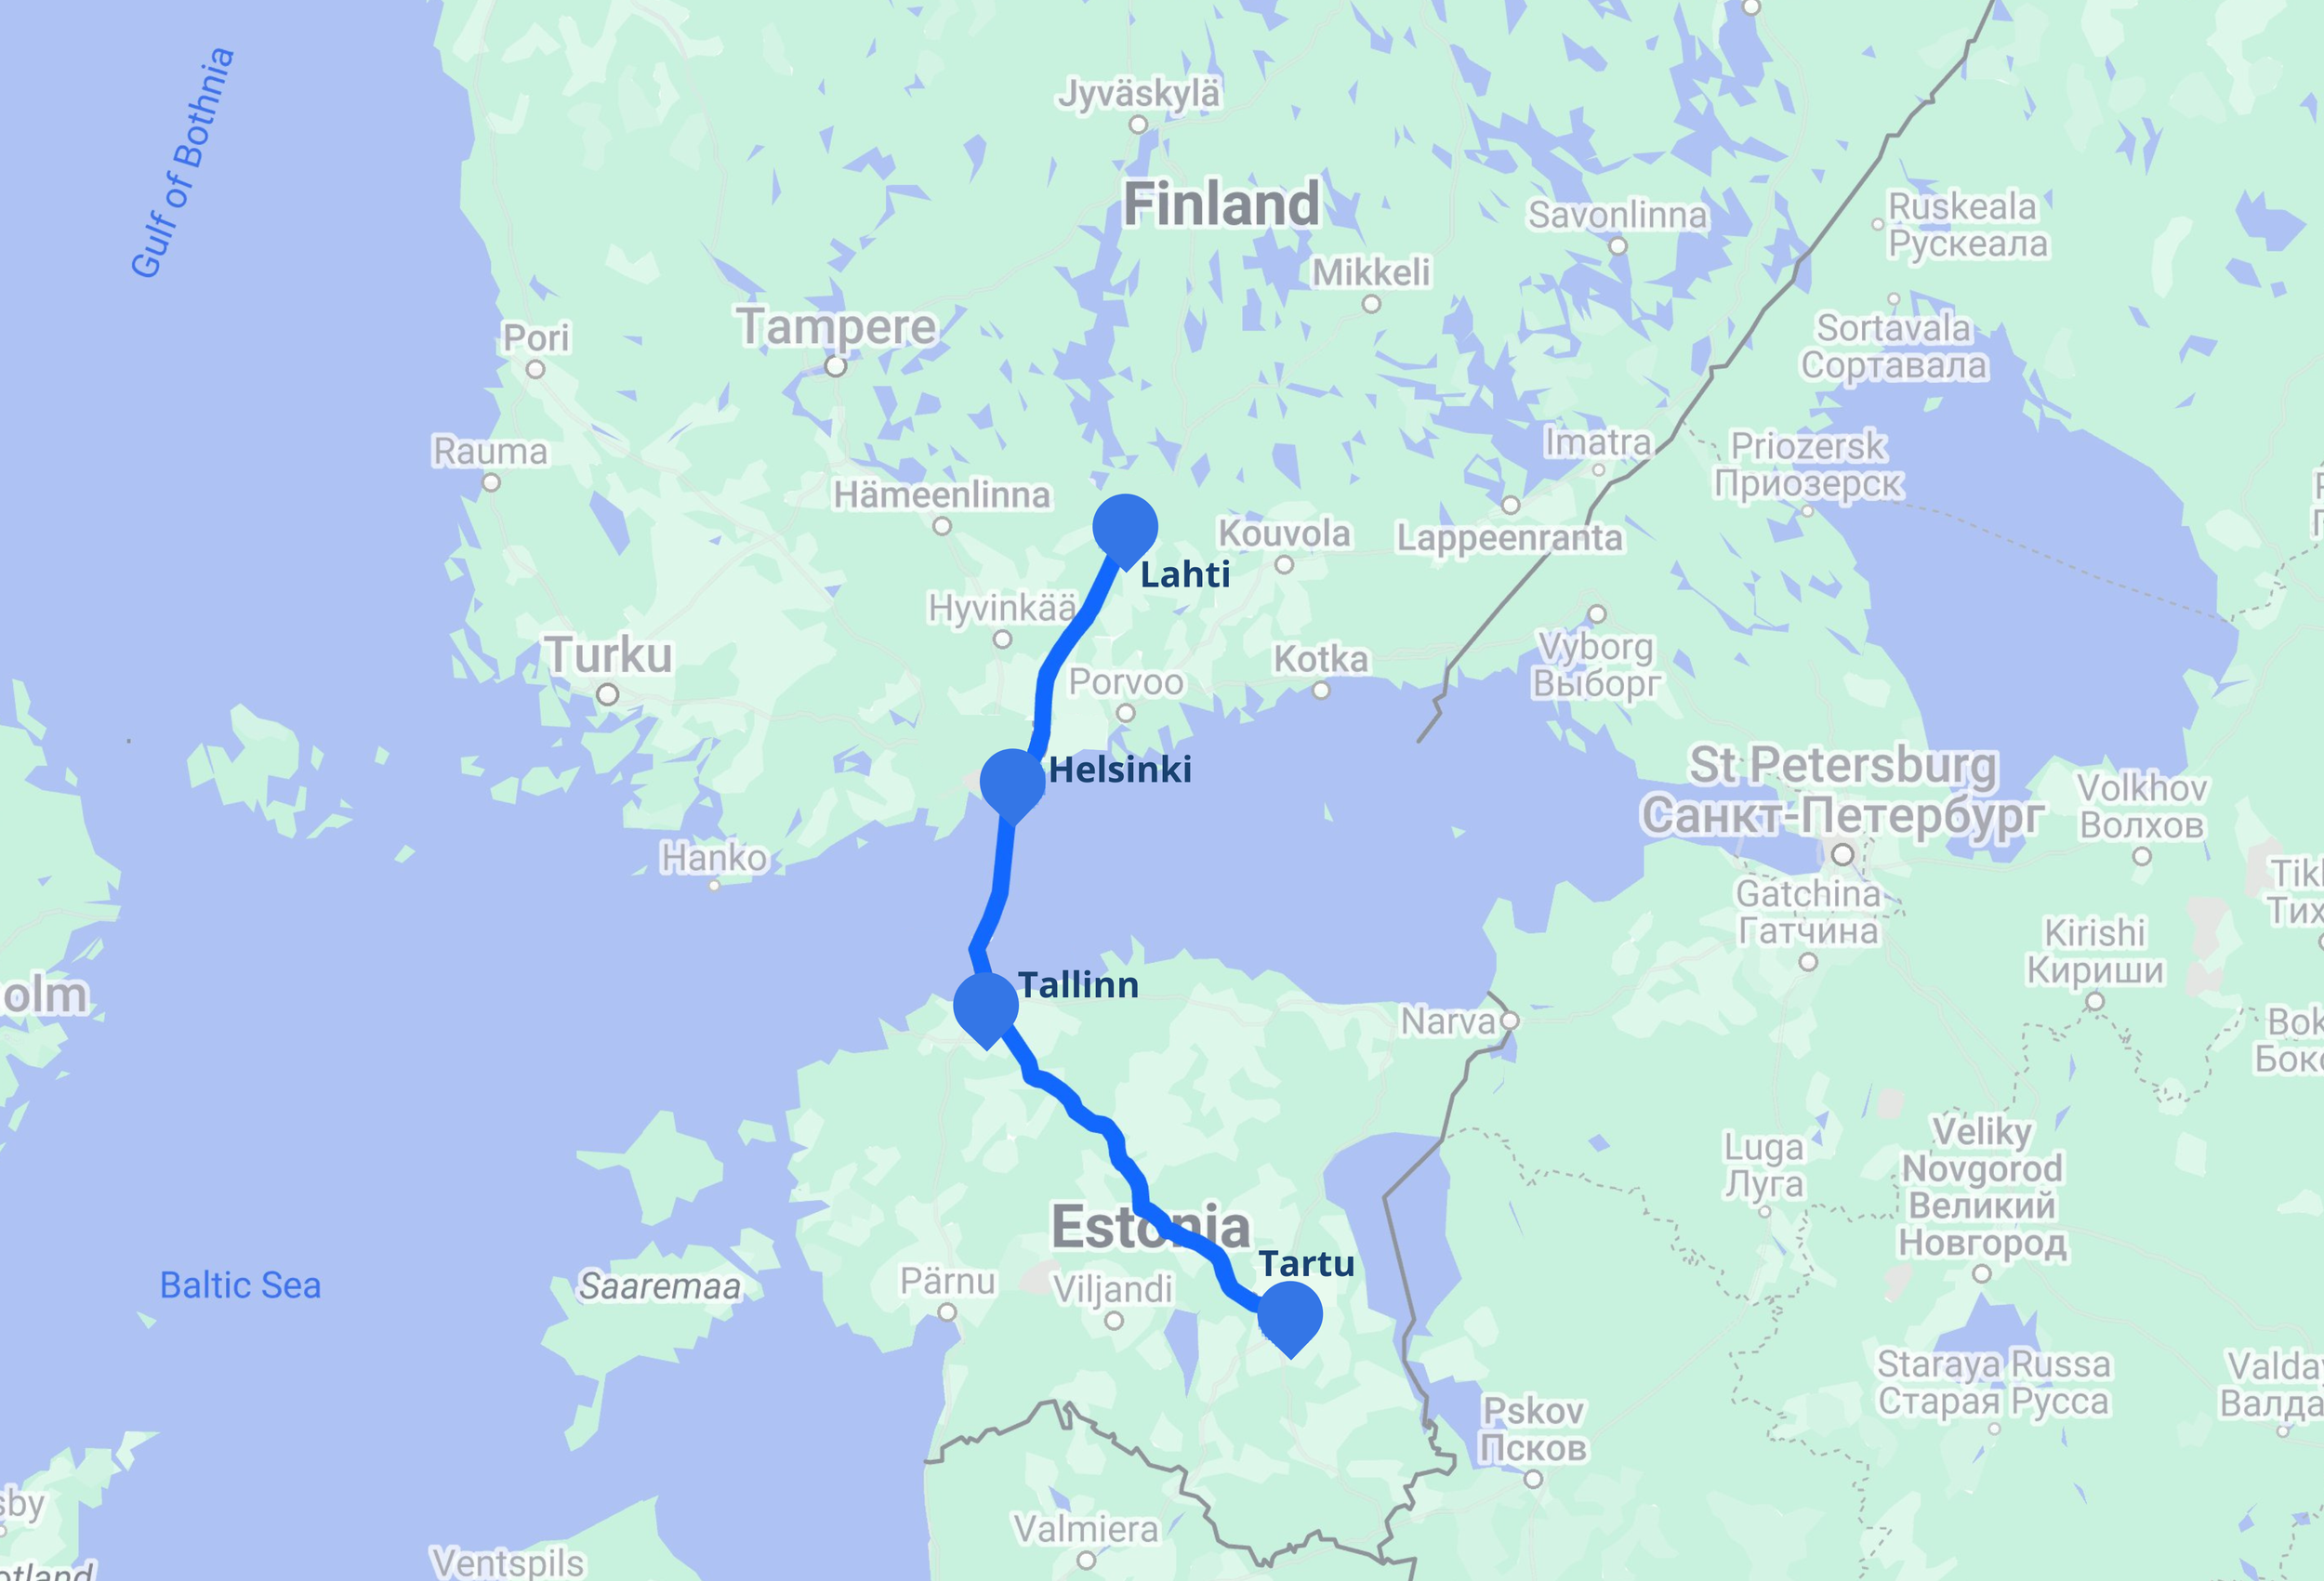 Ground transportation, beginning in Tallinn and ending in Helsinki